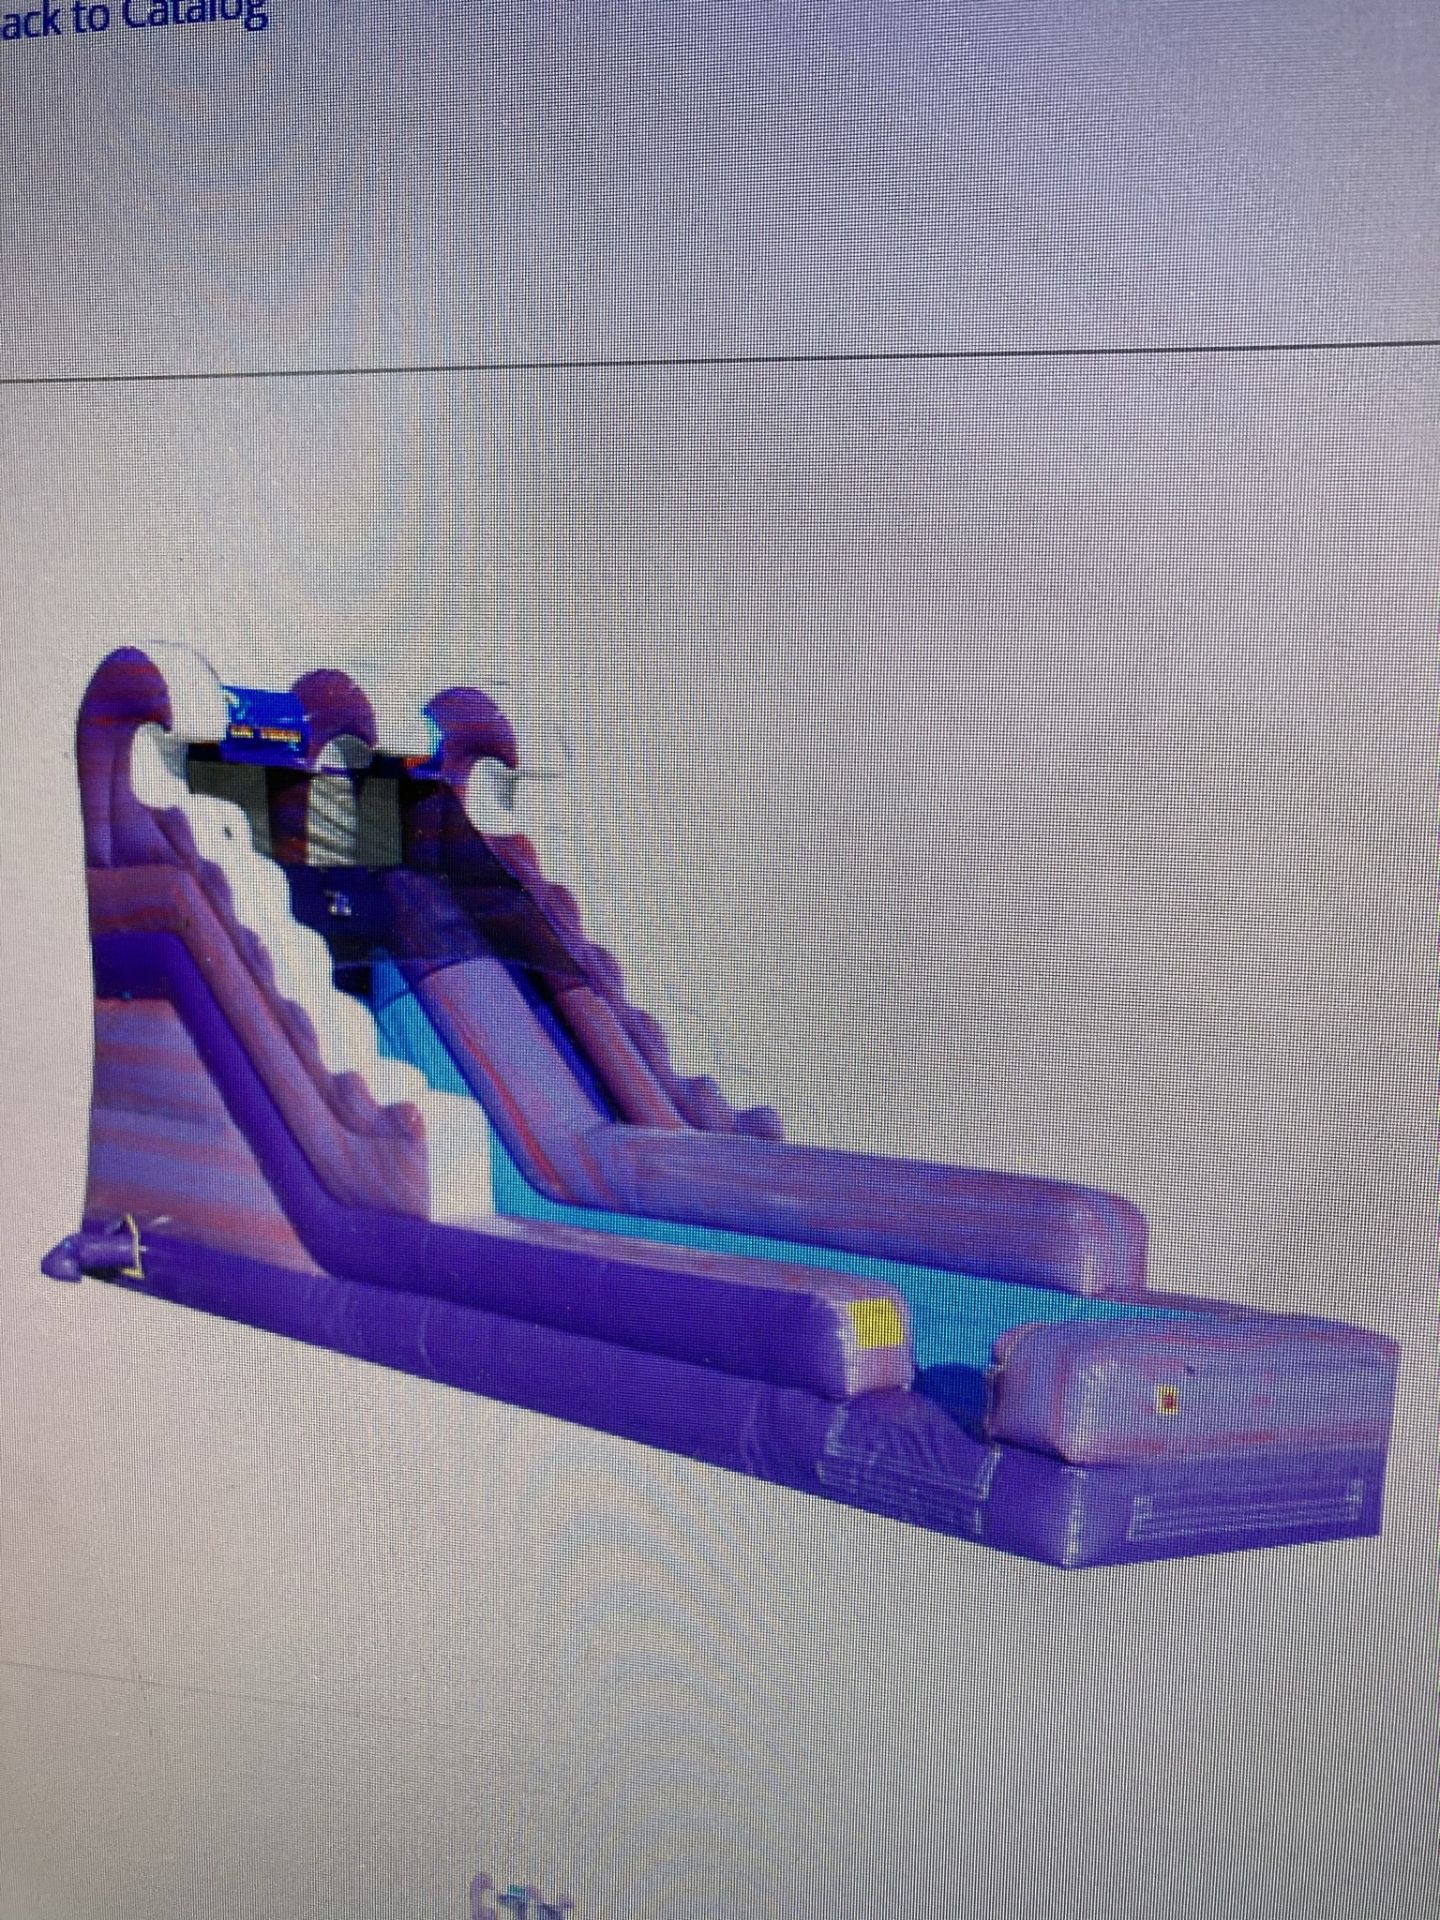 Purple Tides Slide Jumper